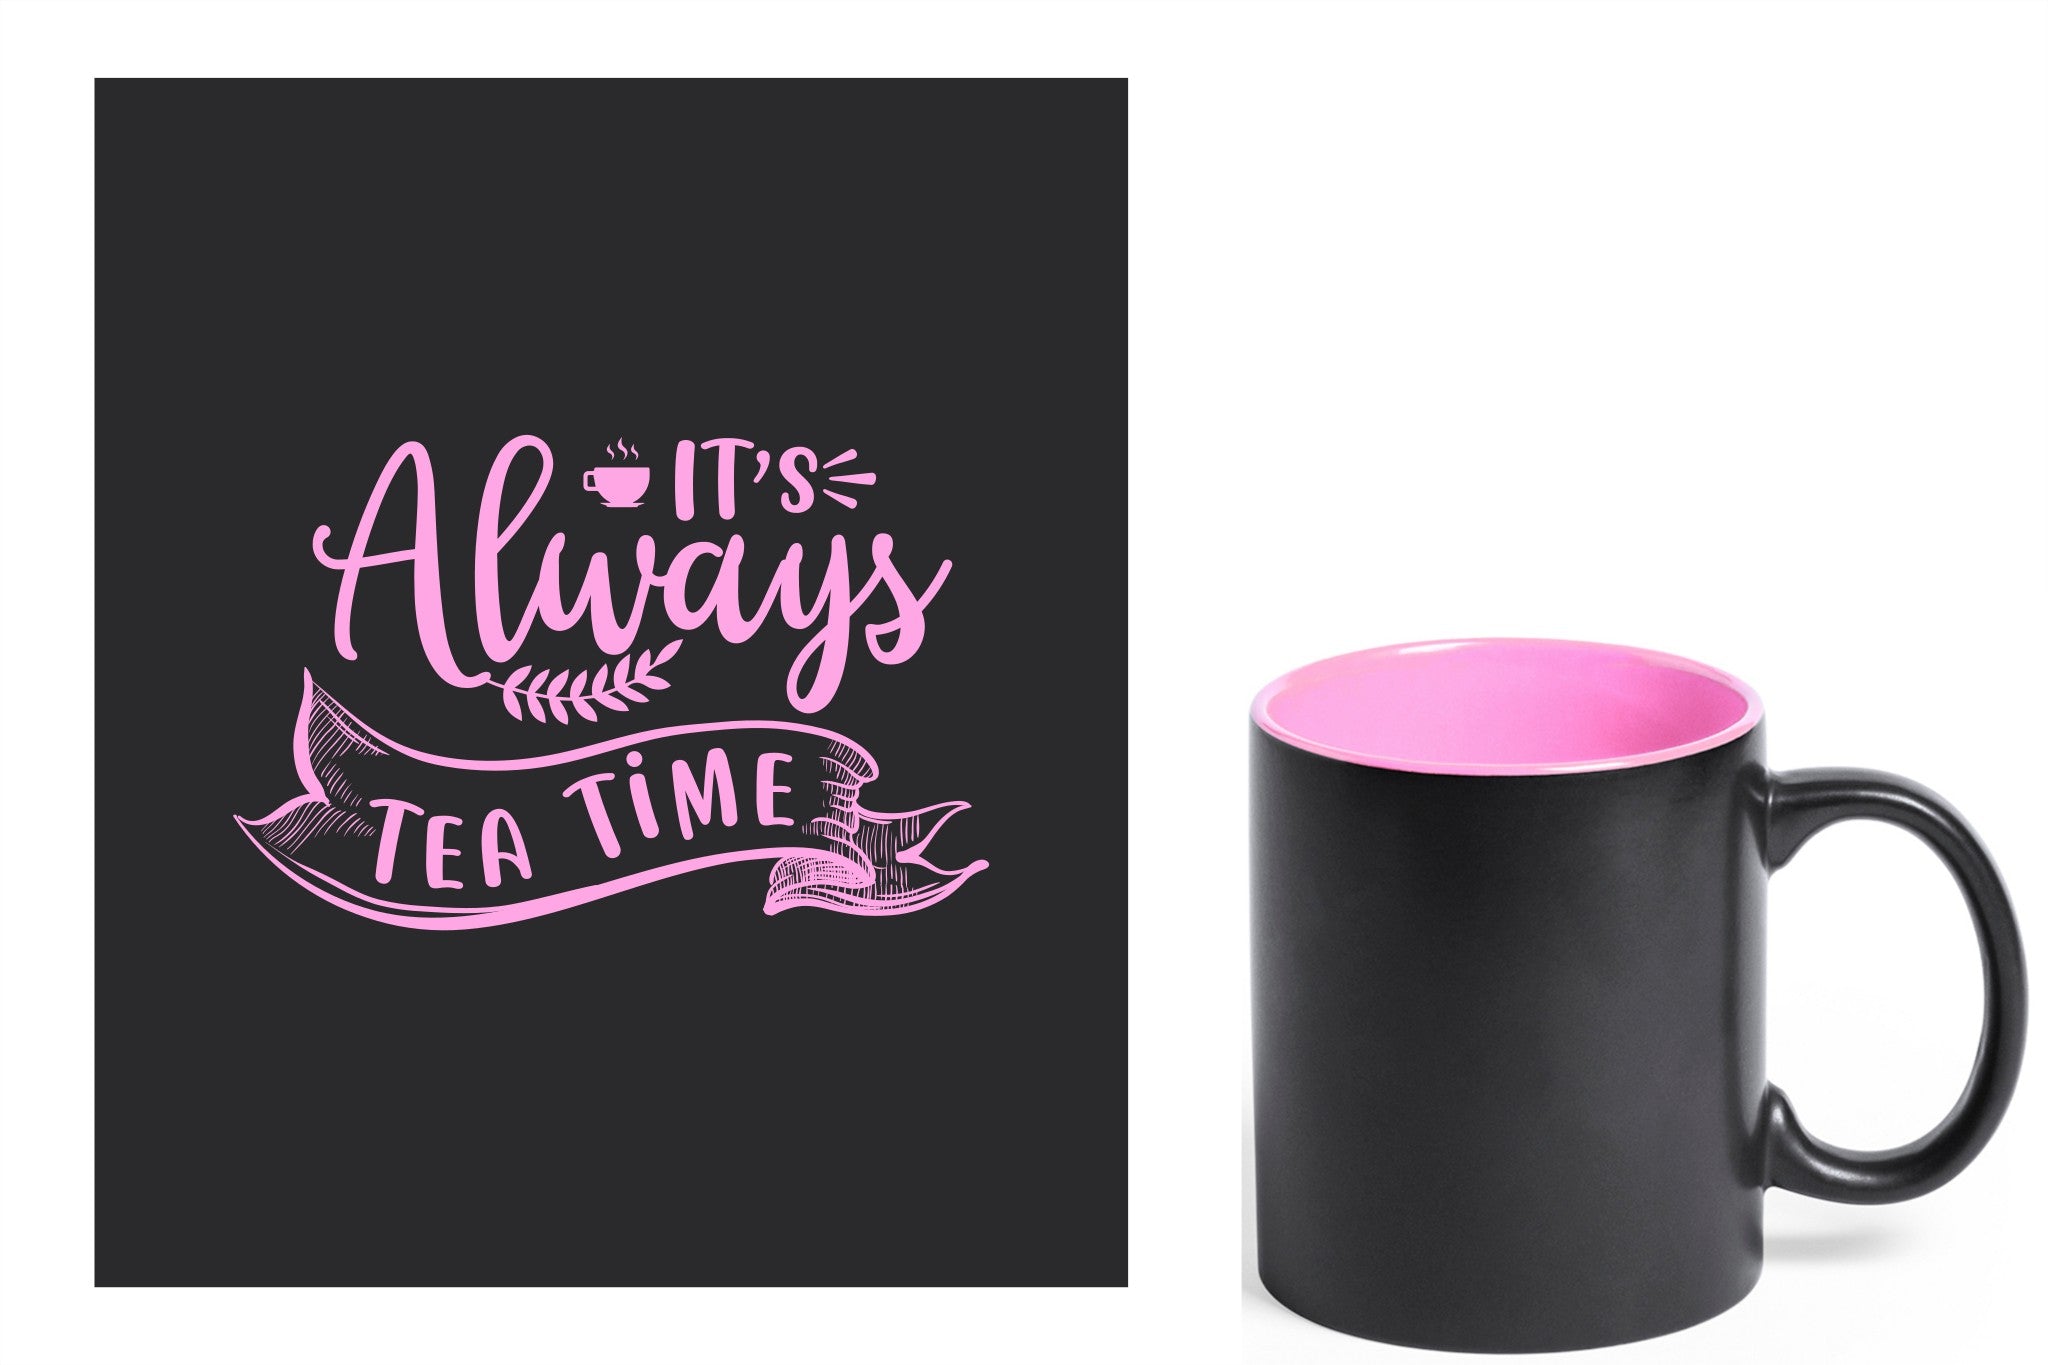 zwarte keramische mok met roze gravure  'It's always tea time'.